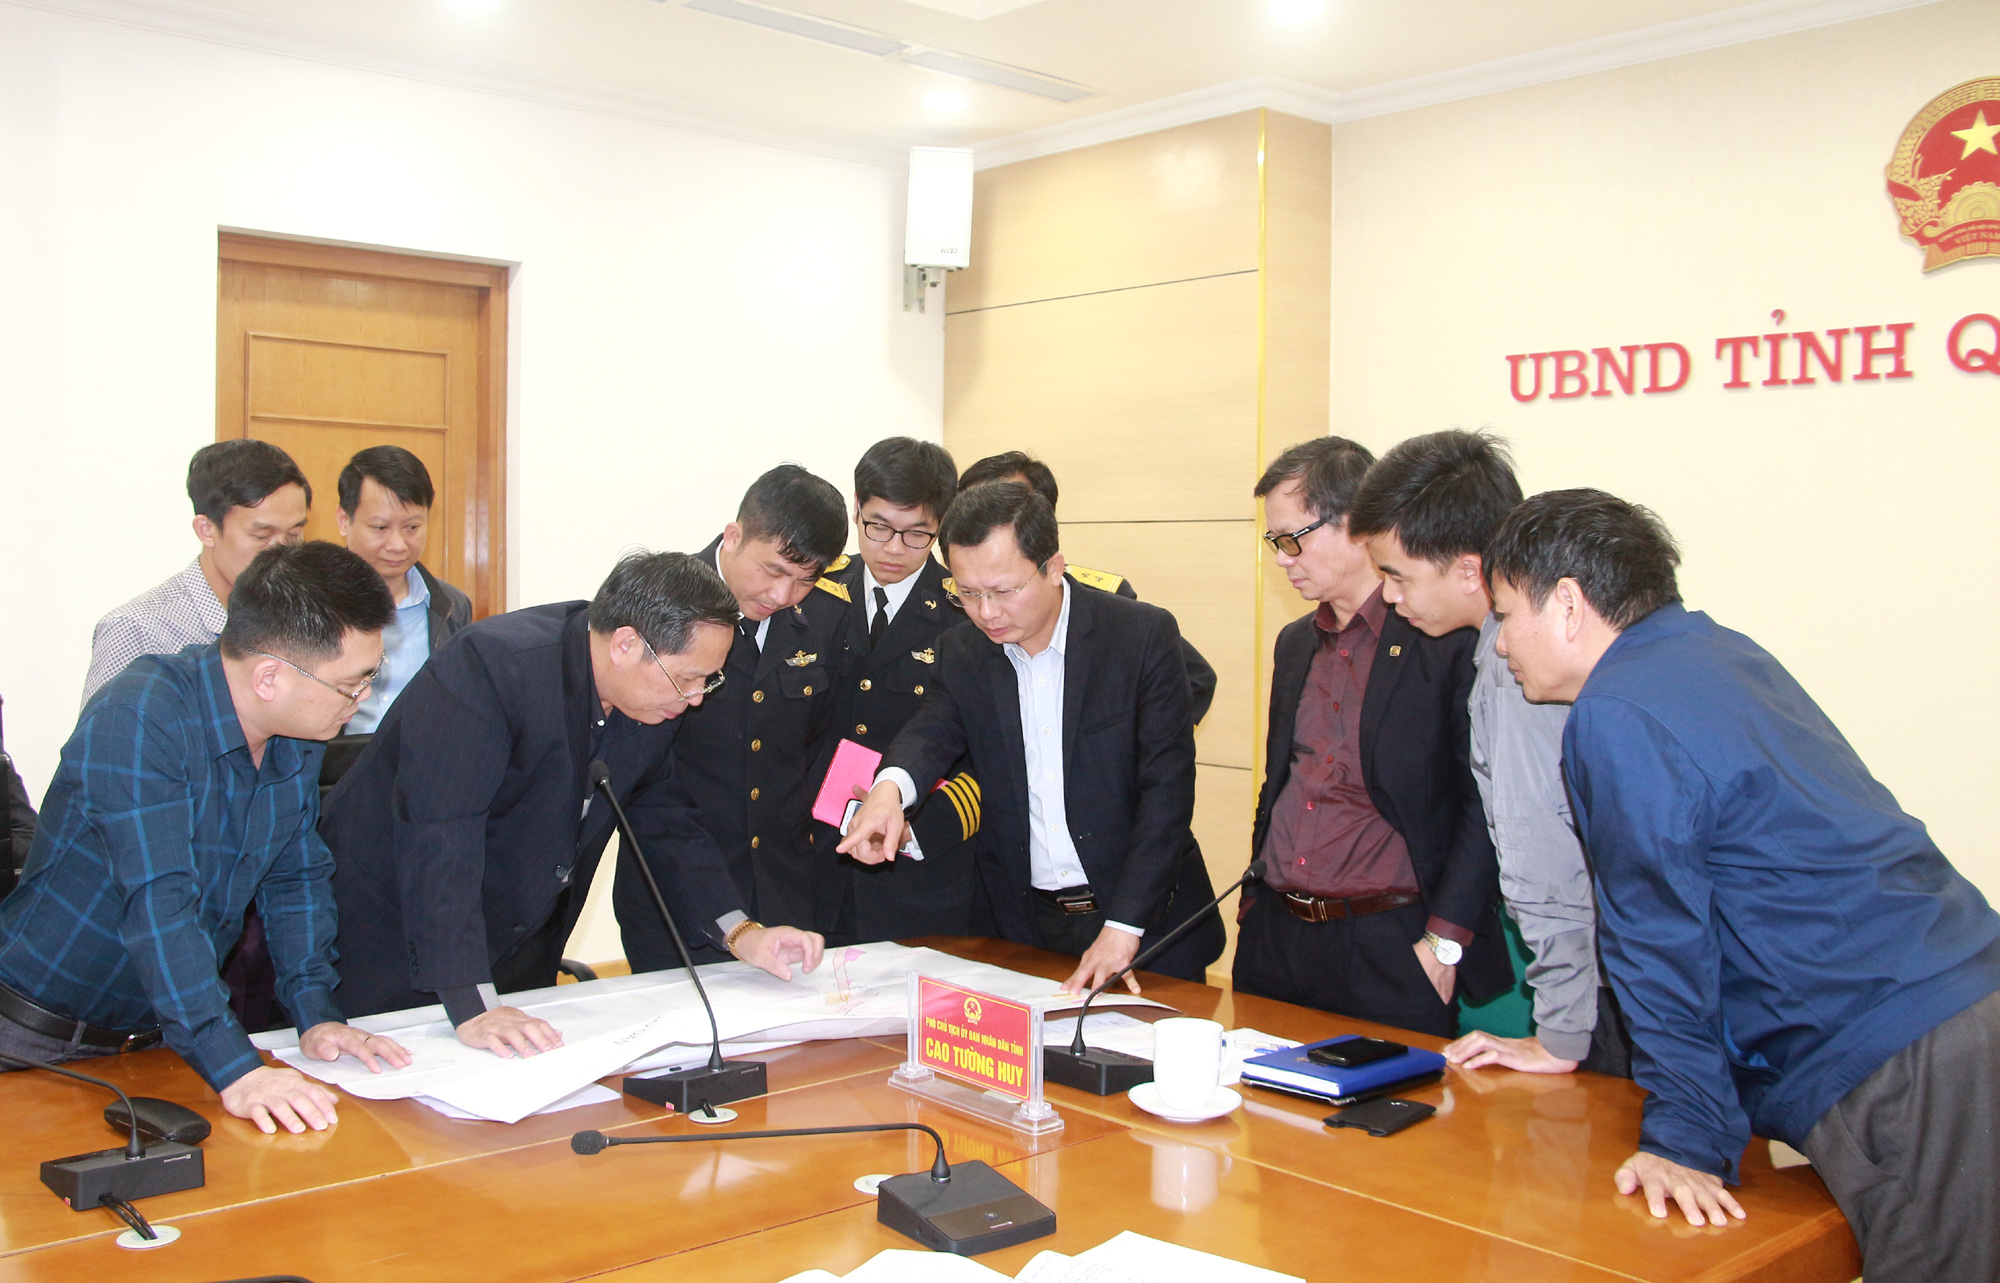 Đồng chí Cao Tường Huy, Phó Chủ tịch UBND tỉnh, rà soát diện tích còn vướng mắc GPMB.